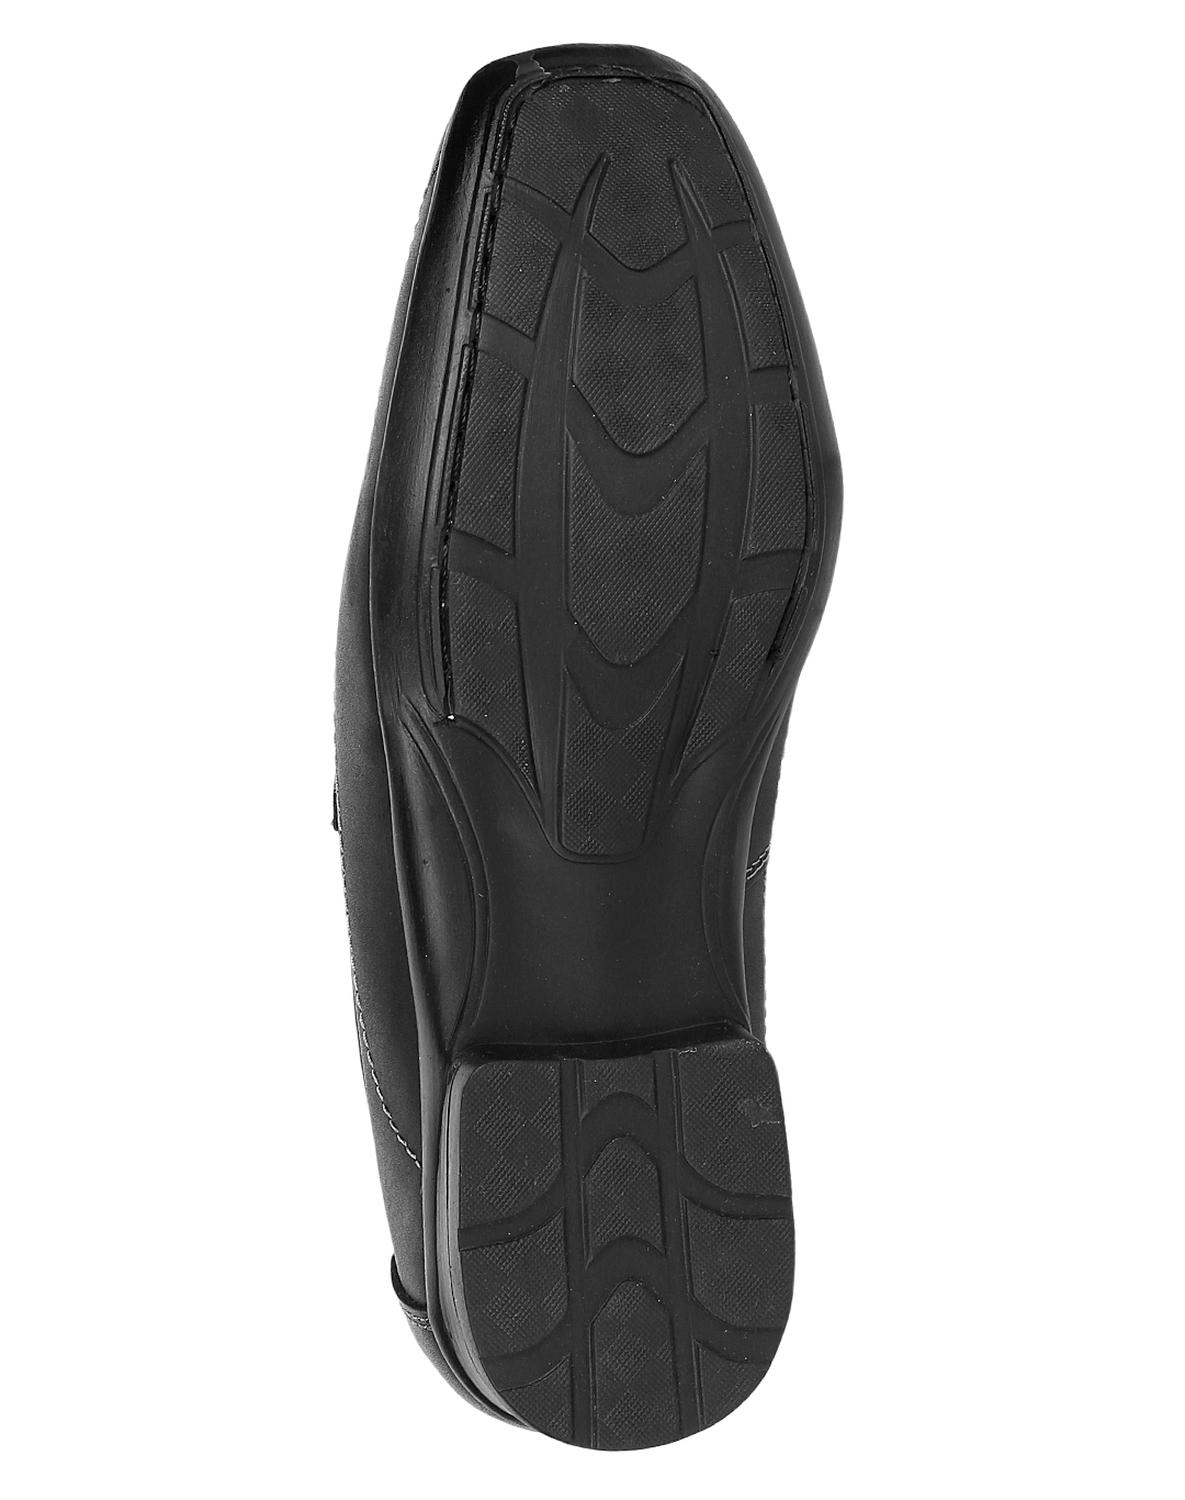 Zapato Casual Piso Hombre Negro Piel Sebastian 14903800